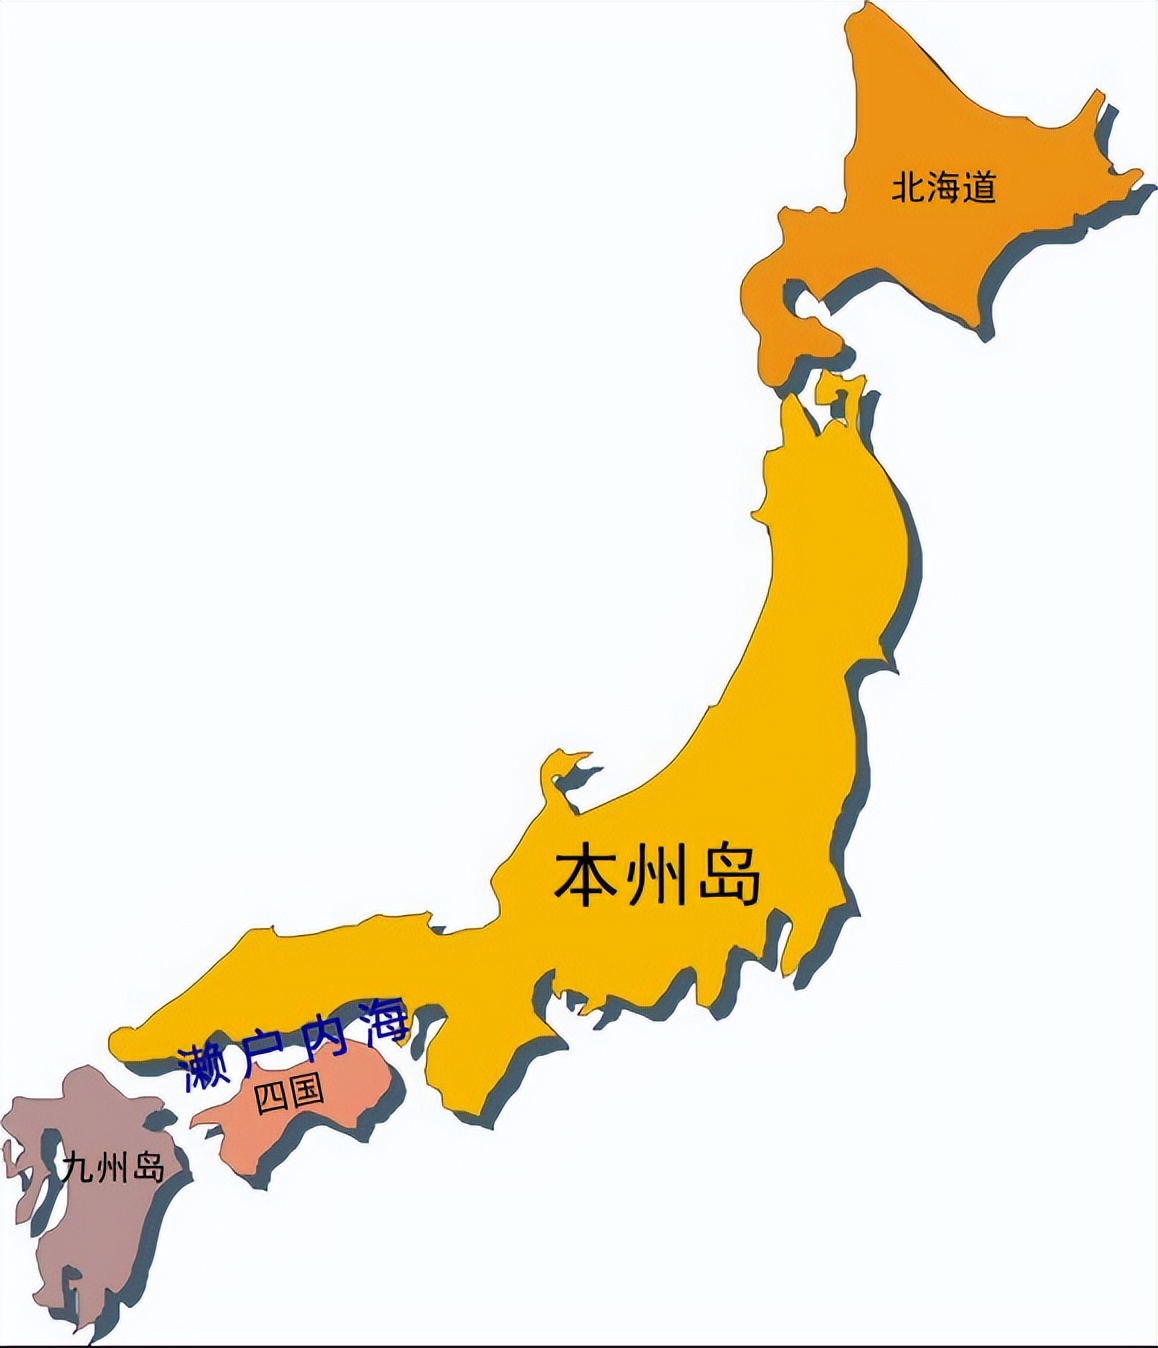 日本位置轮廓图图片